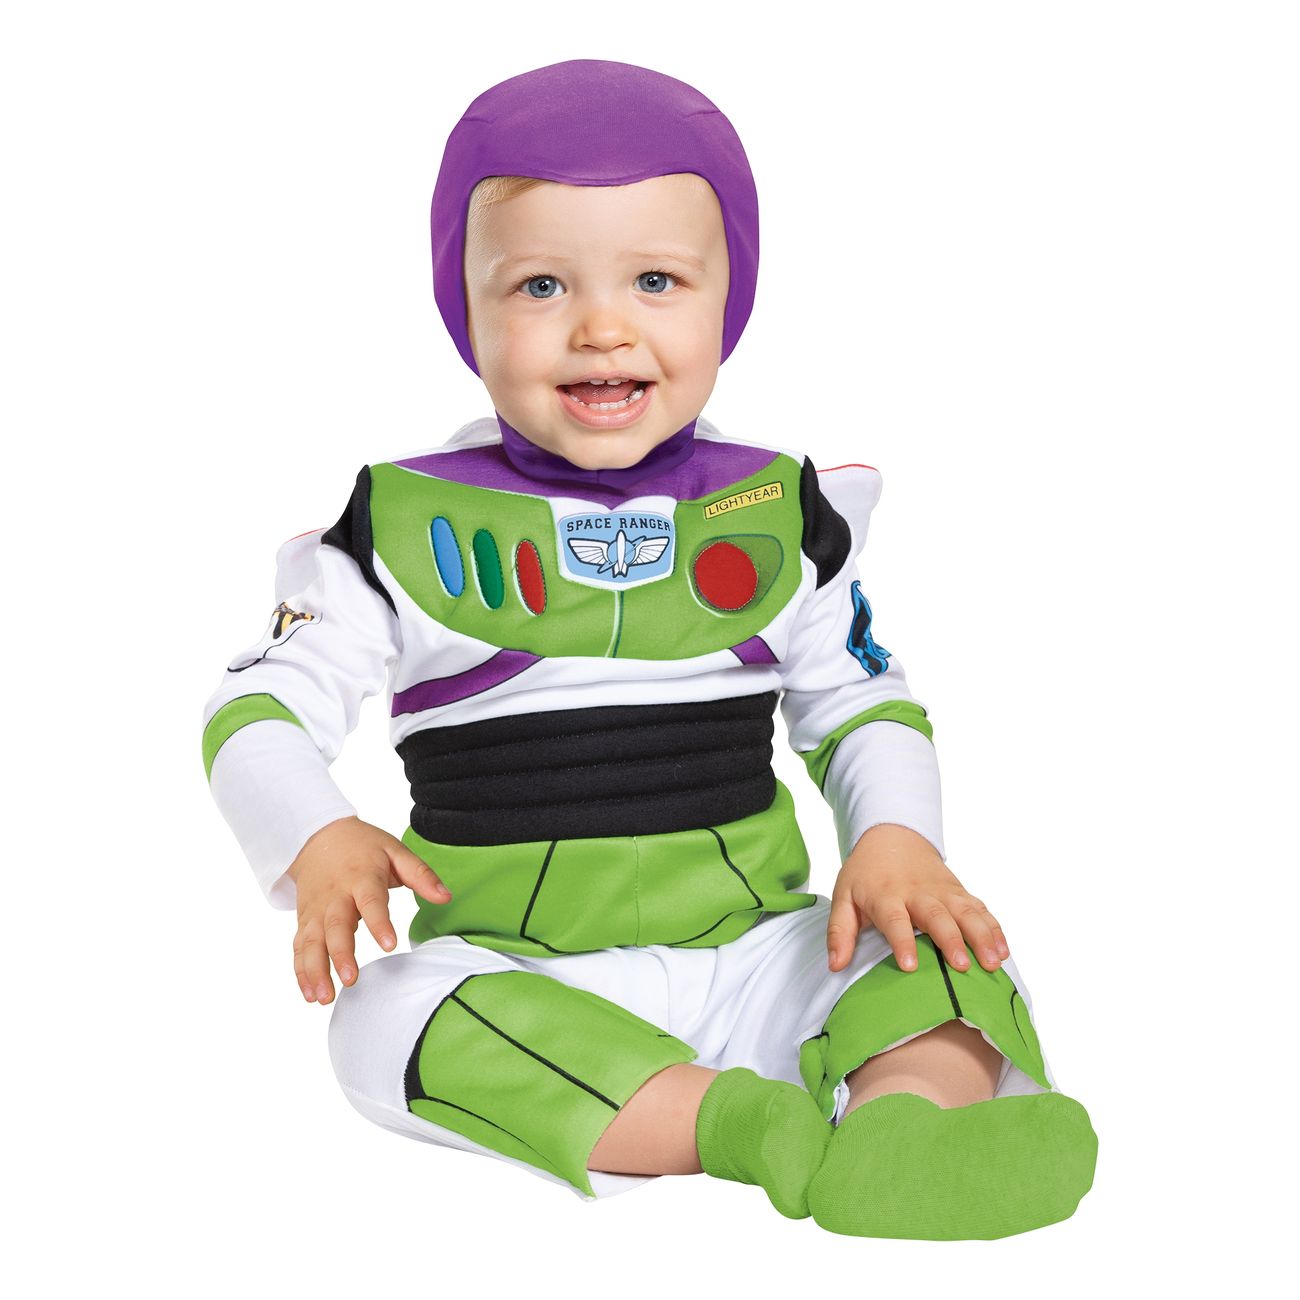 Buzz Lightyear Babykostume - Toy Story børnekostumer